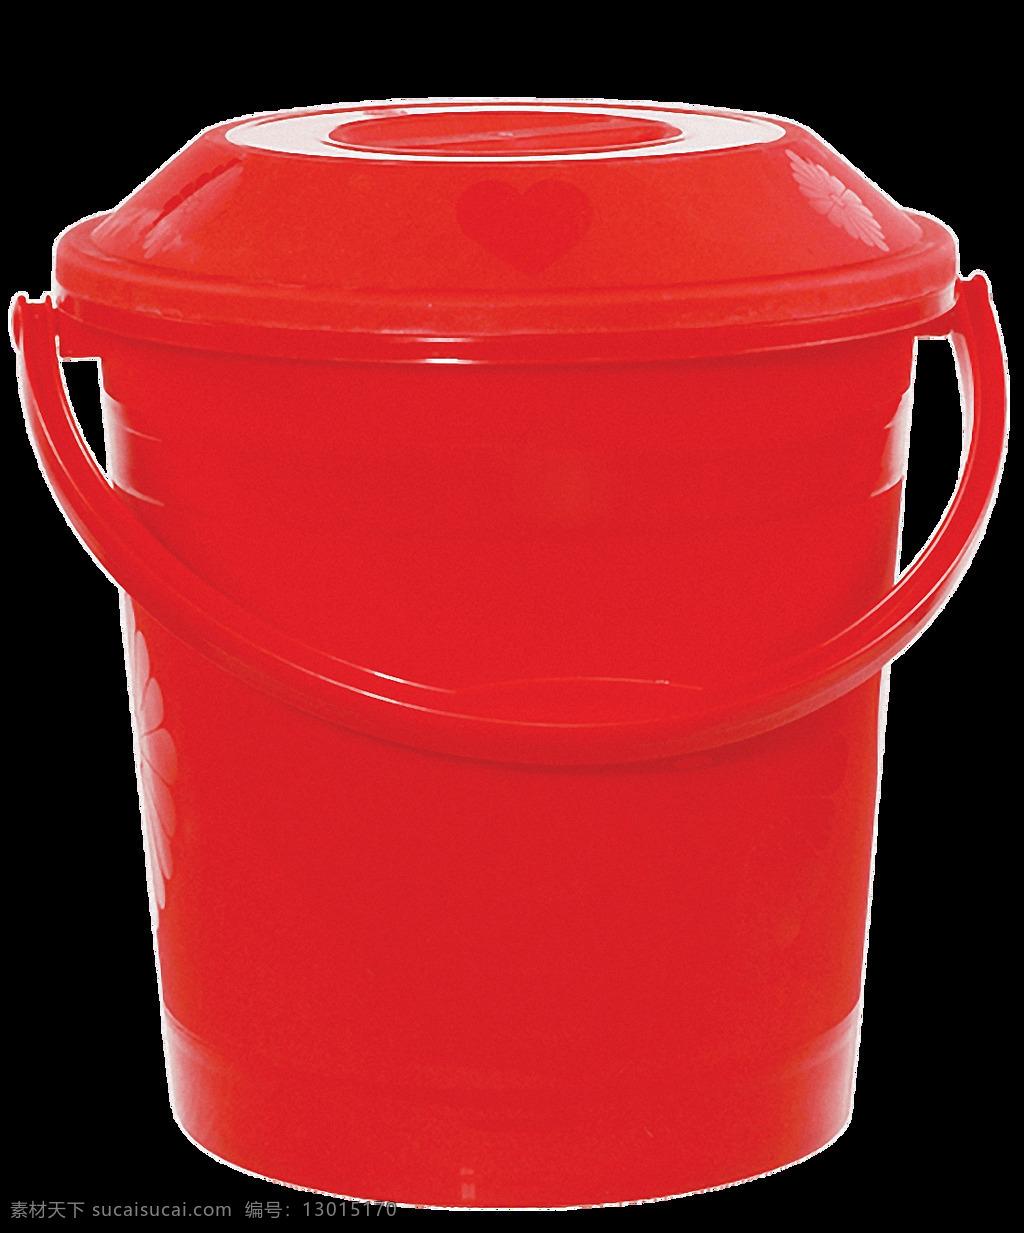 带 盖子 红色 塑料桶 免 抠 透明 水桶 塑料桶素材 不锈钢桶图片 铁桶 绿色塑料桶 蓝色塑料桶 红色塑料桶 黄色塑料桶 不锈钢水桶 水桶素材